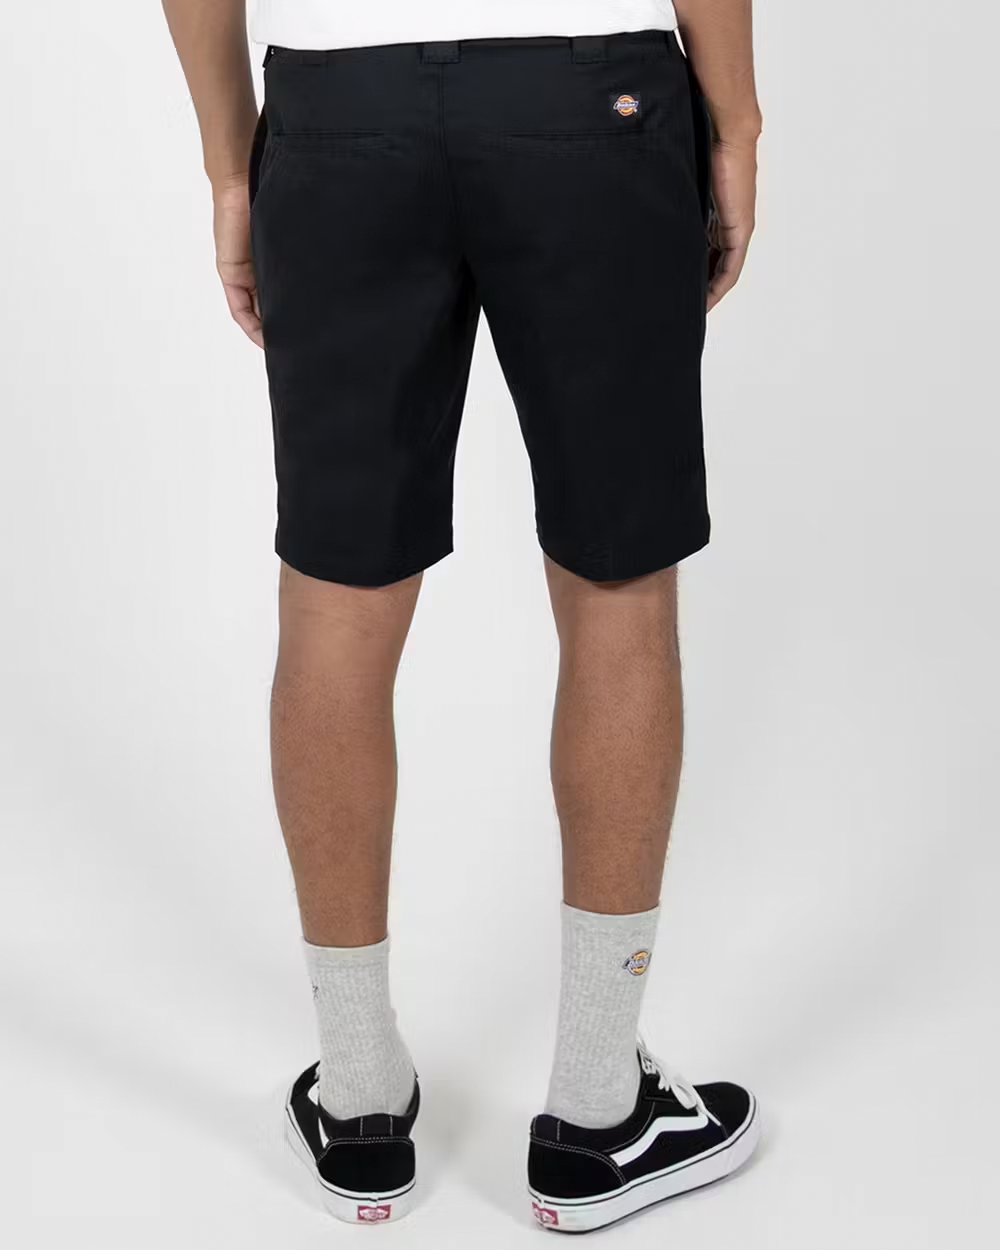 DICKIES 872 Slim Fit Shorts - Black - VENUE.